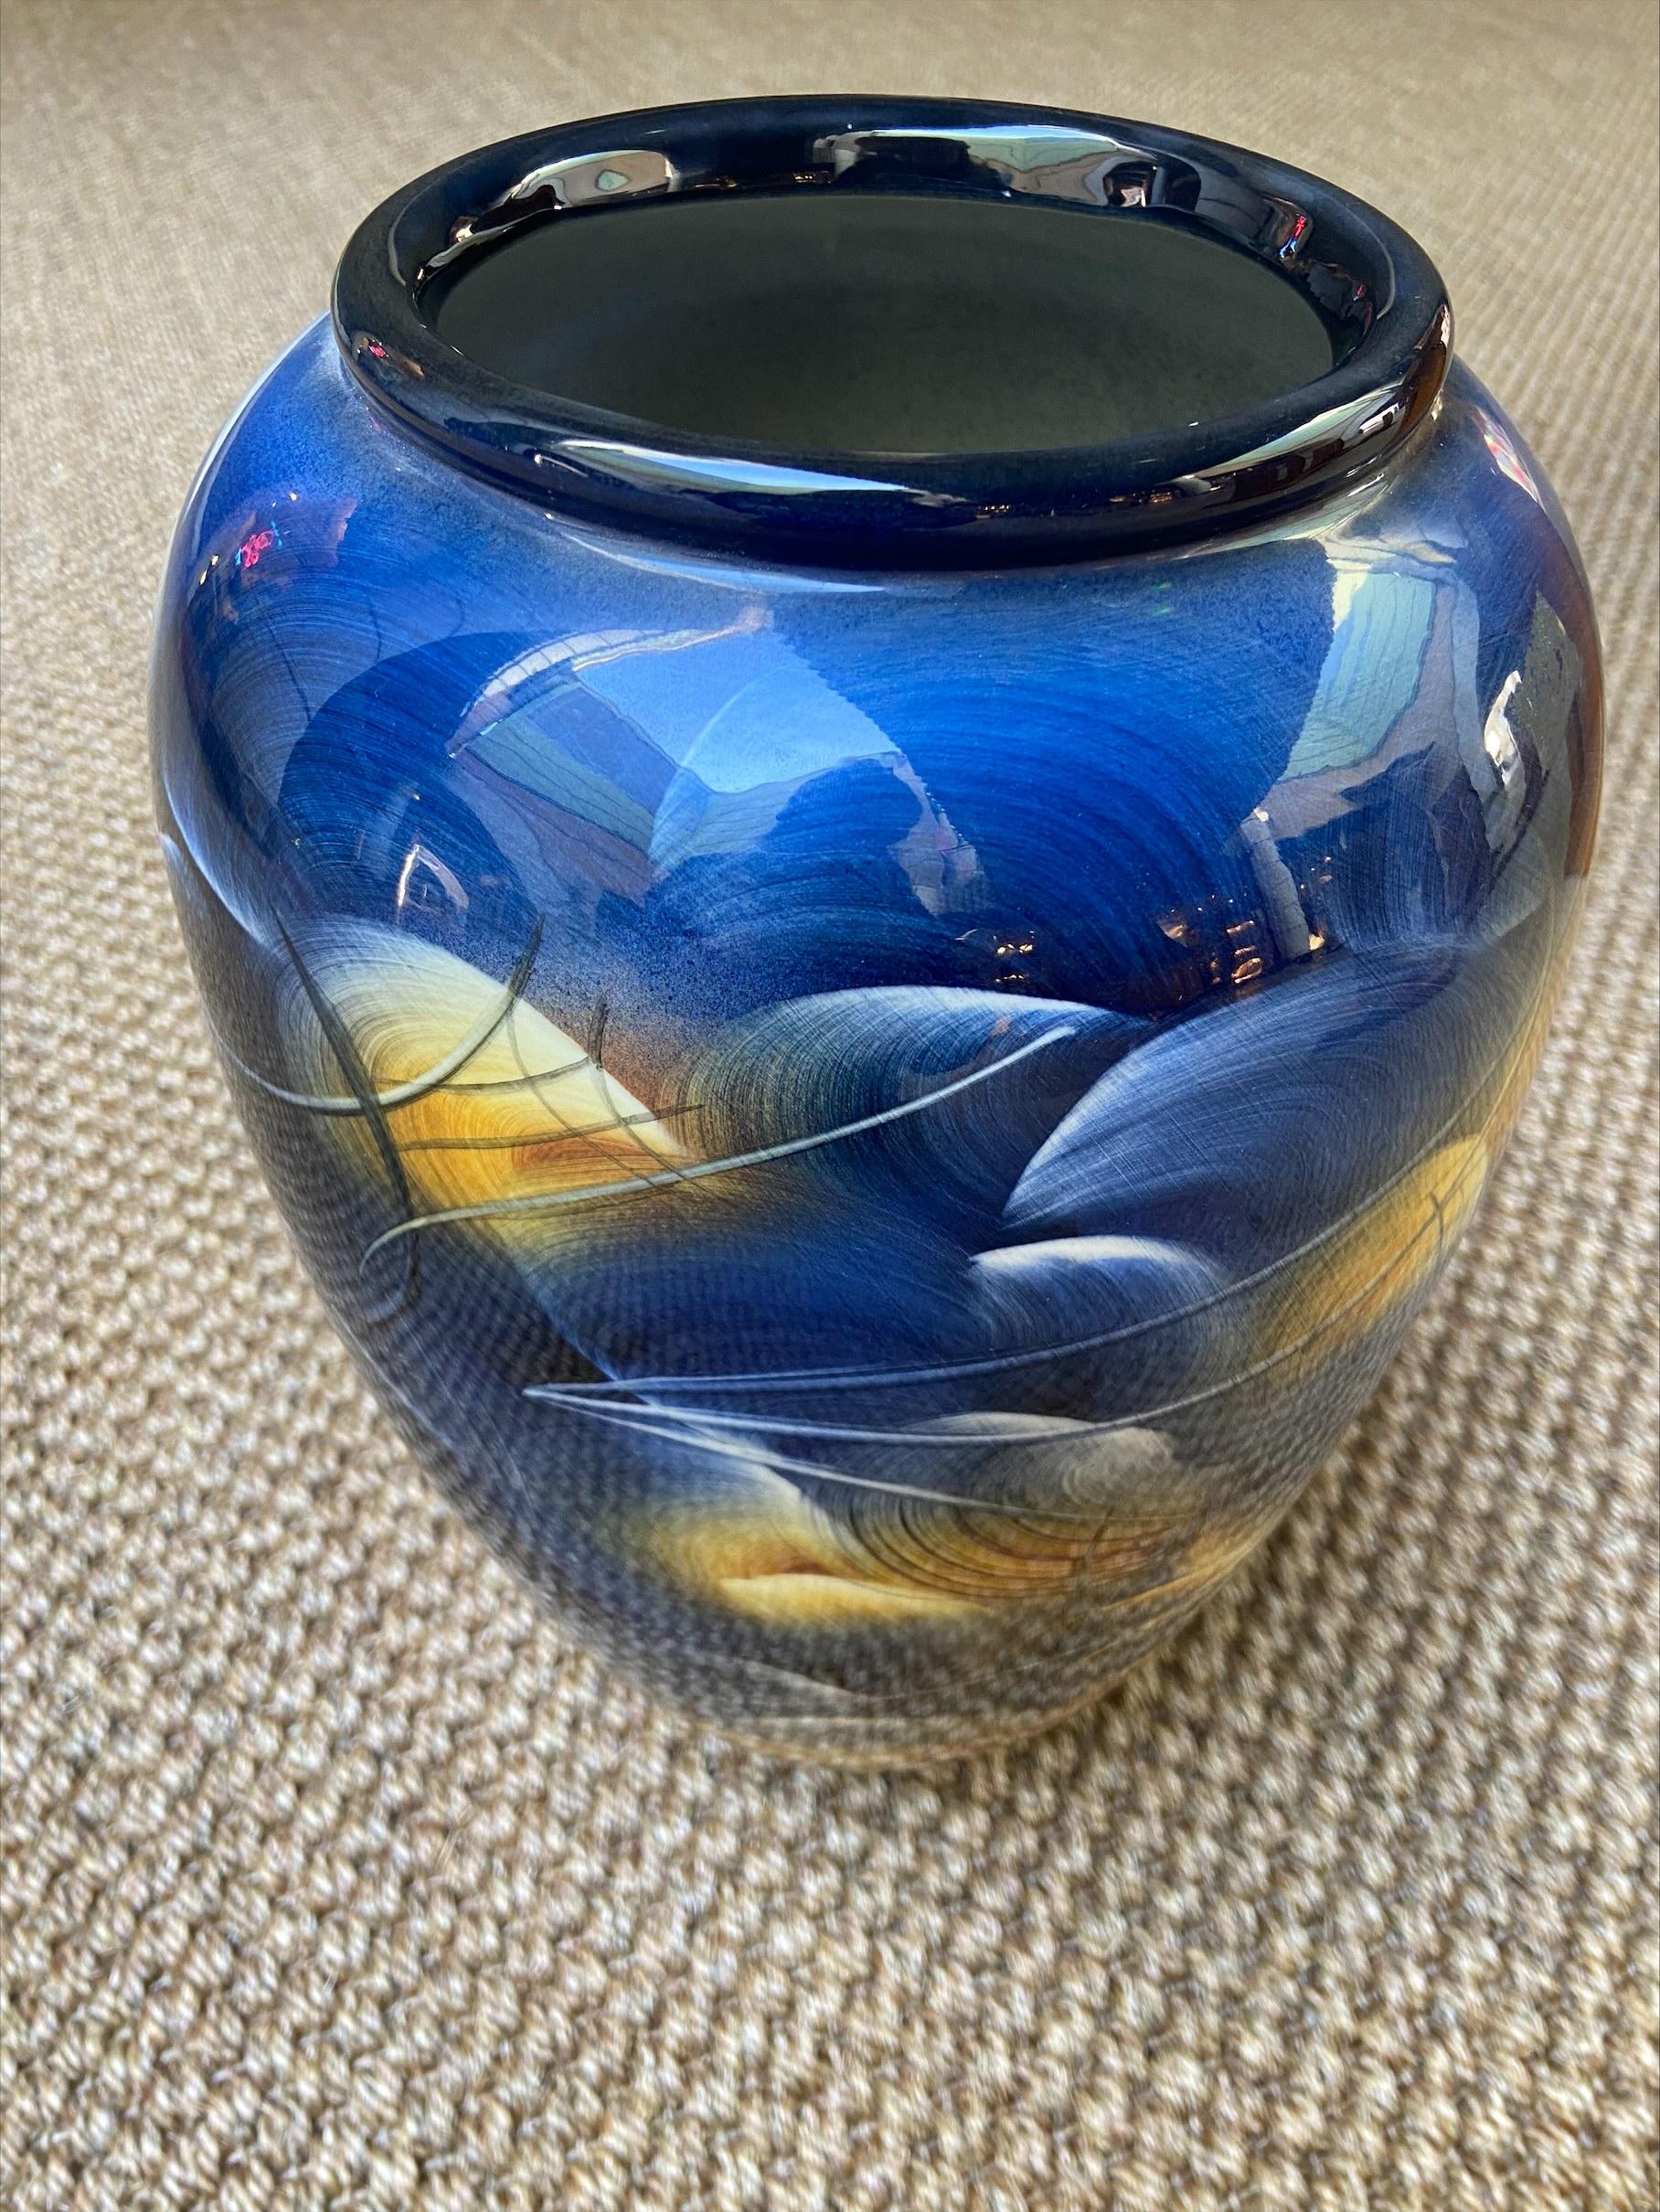 Vase en céramique - Grech - Circa 2000

Céramique laquée
Mesures : H30 x D20
Signé au pied.

   